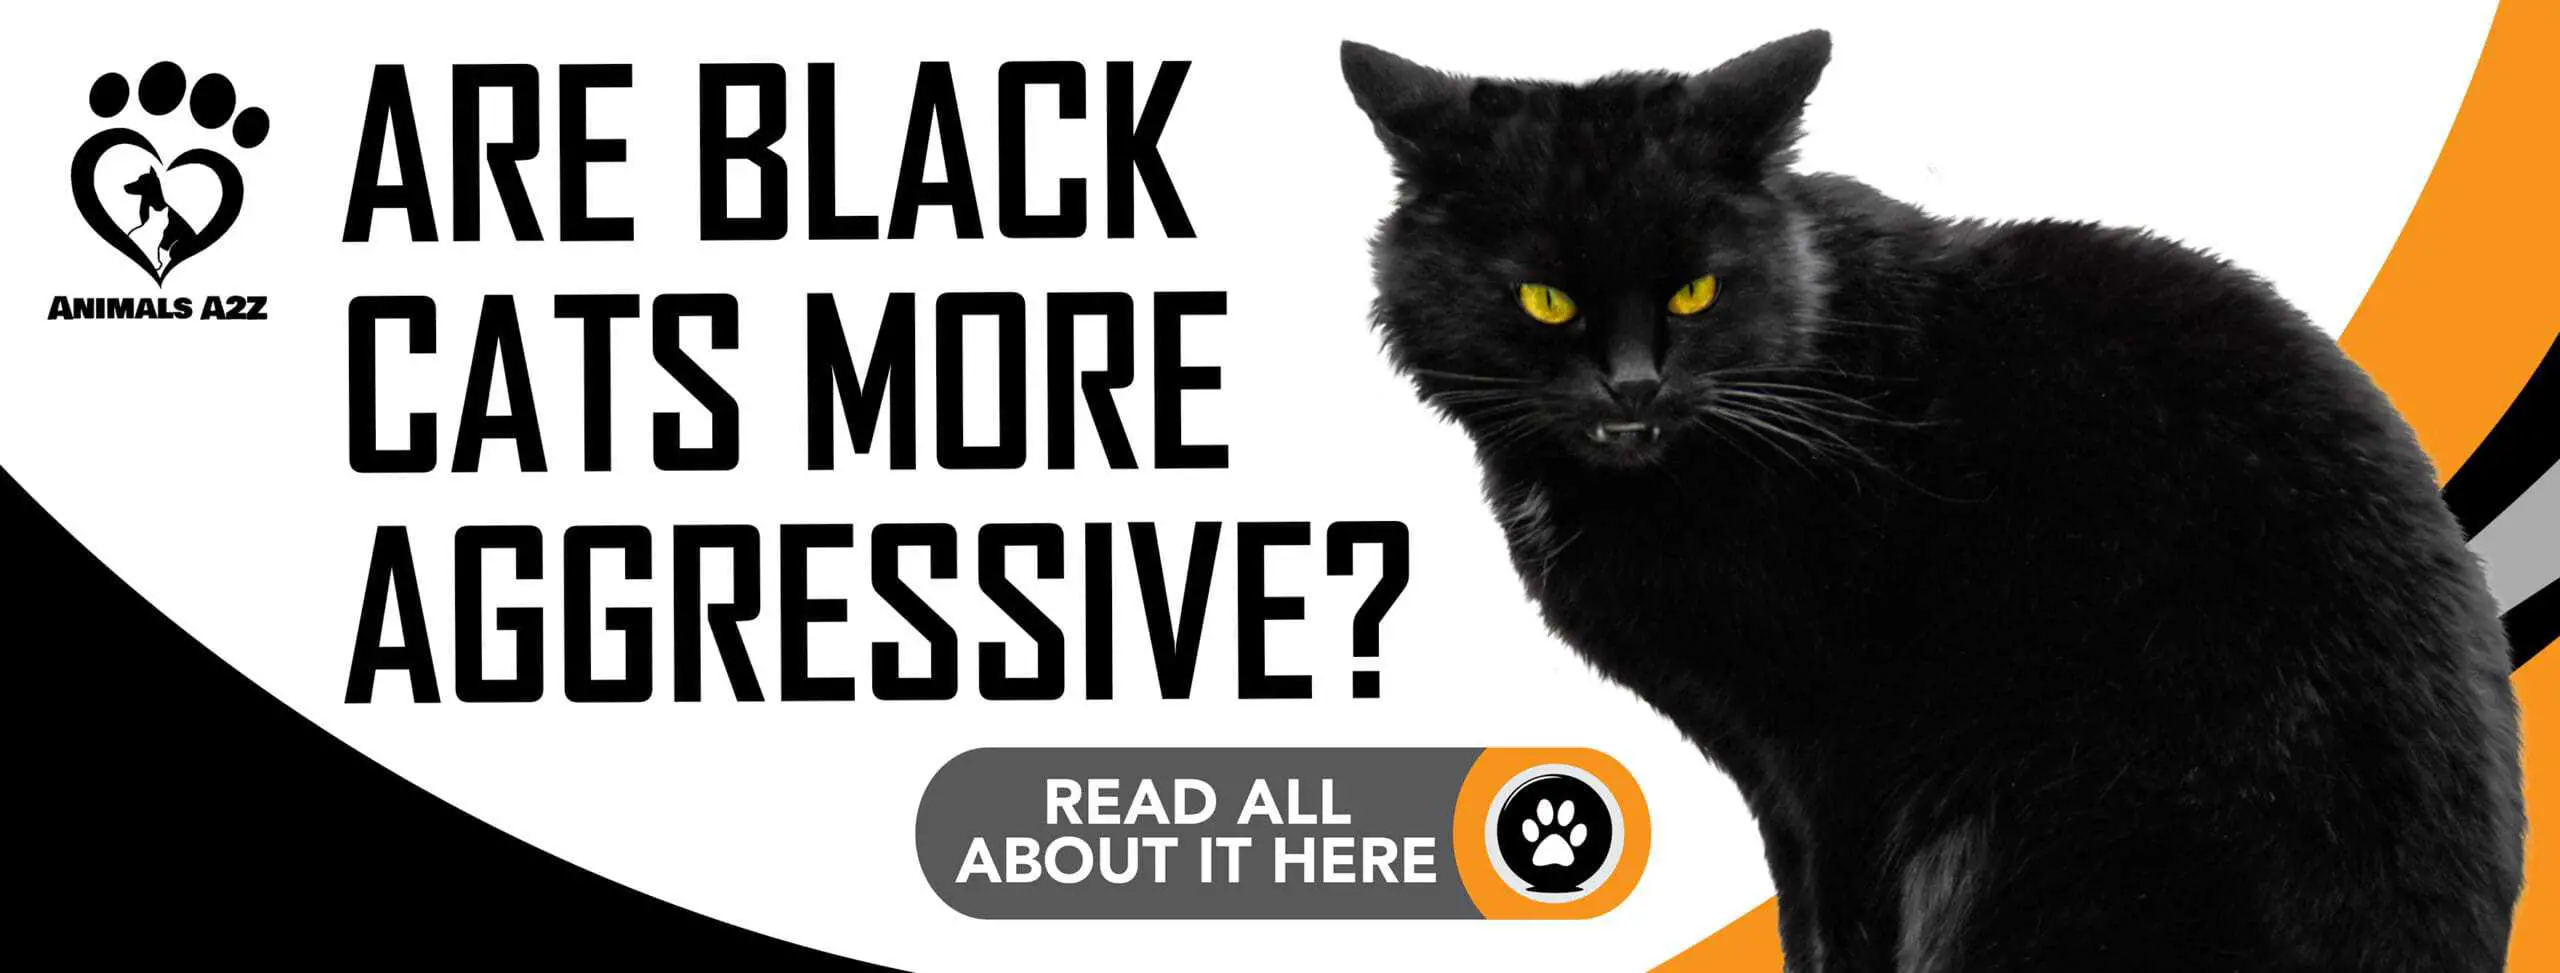 ¿Son los gatos negros más agresivos?